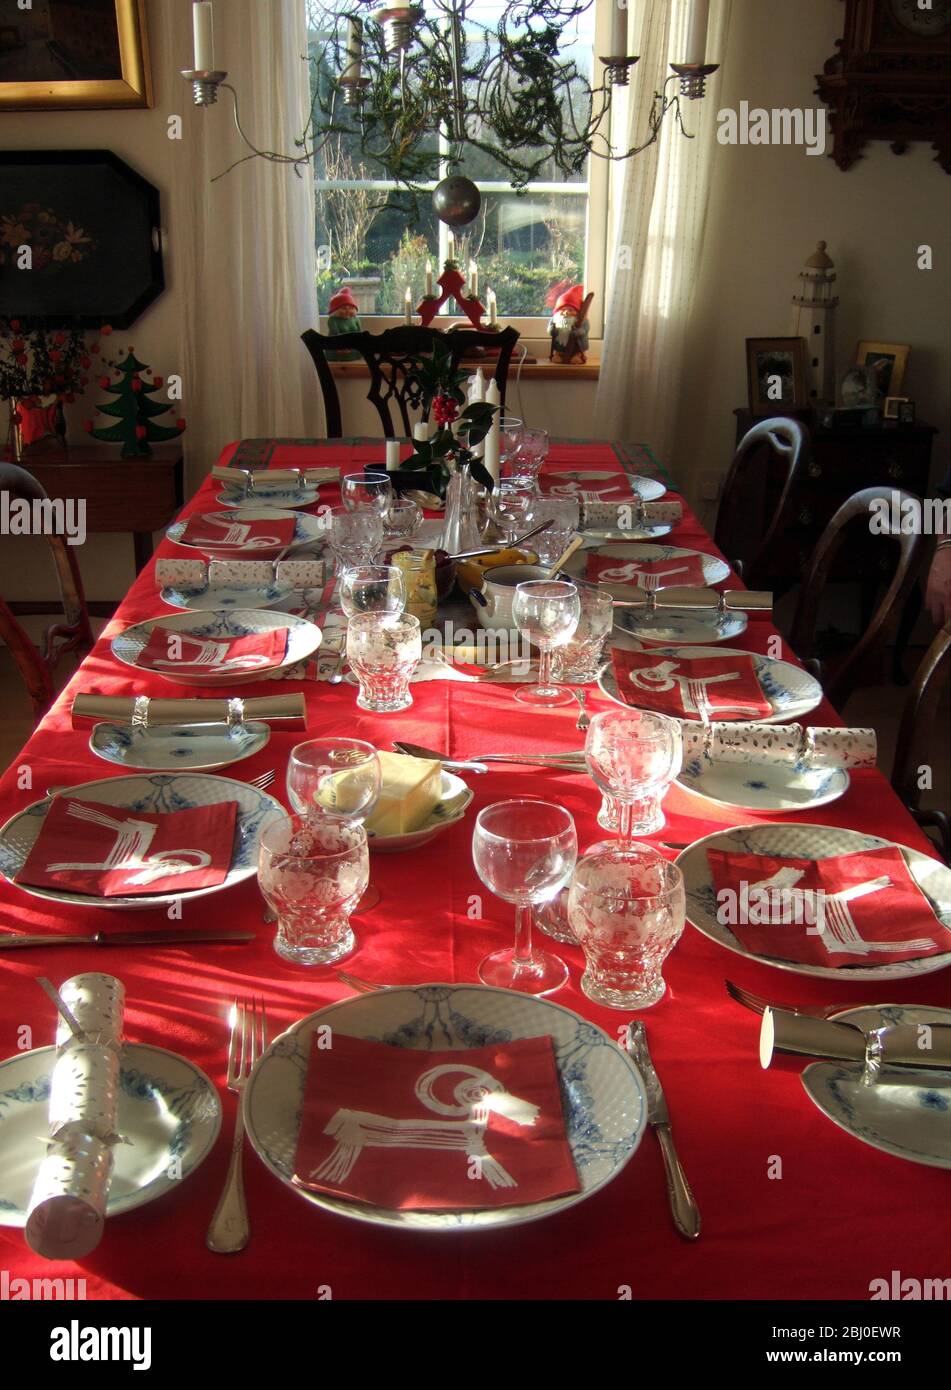 Sonnenlicht scheint in auf der Innenseite mit langen Tisch für Weihnachtsessen mit roten Tischdecke und beste china gelegt, - Stockfoto